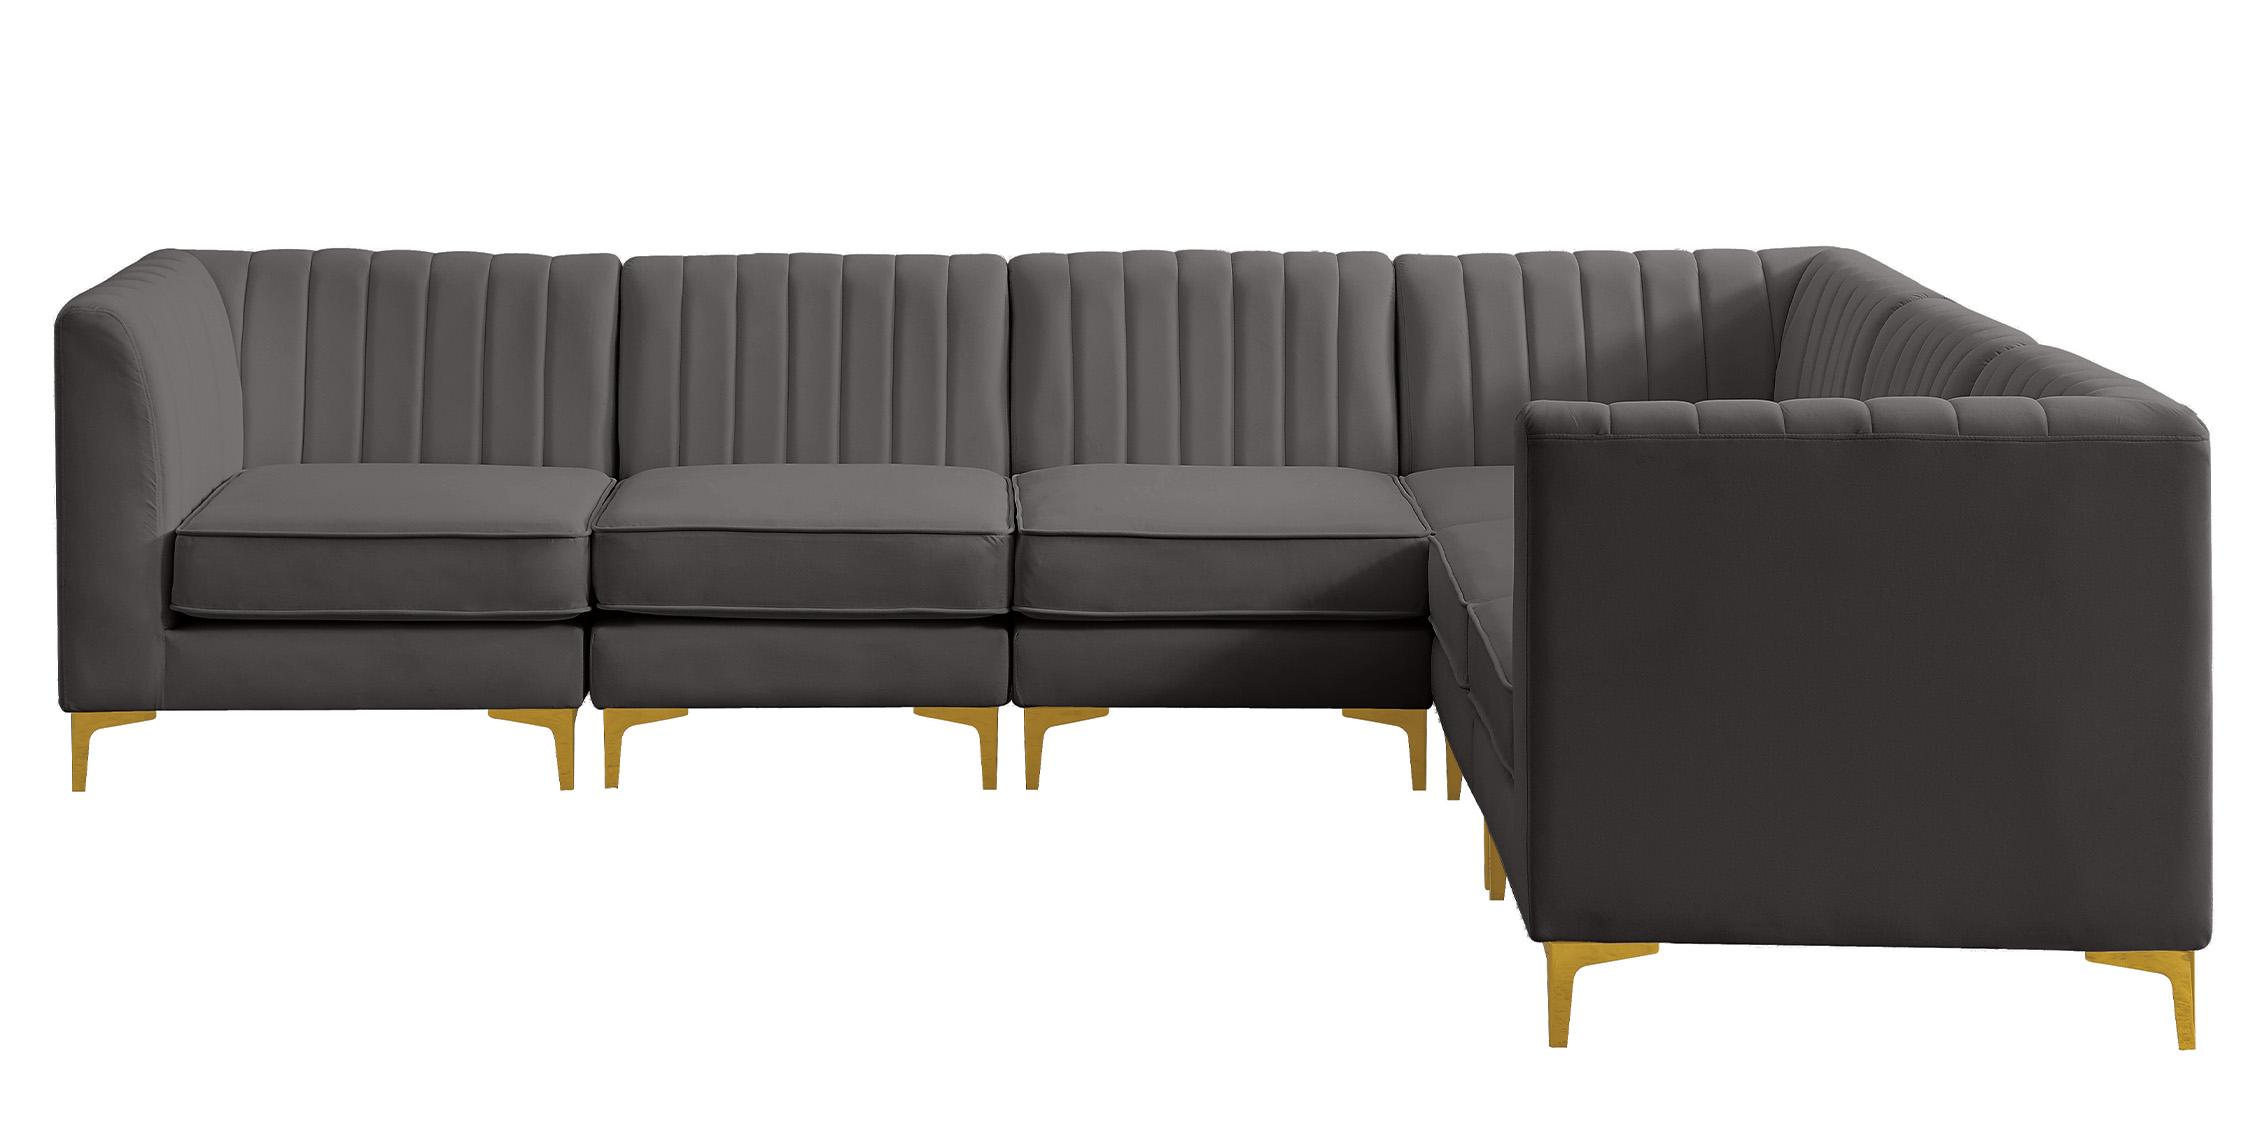 

    
604Grey-Sec6A Meridian Furniture Modular Sectional Sofa
